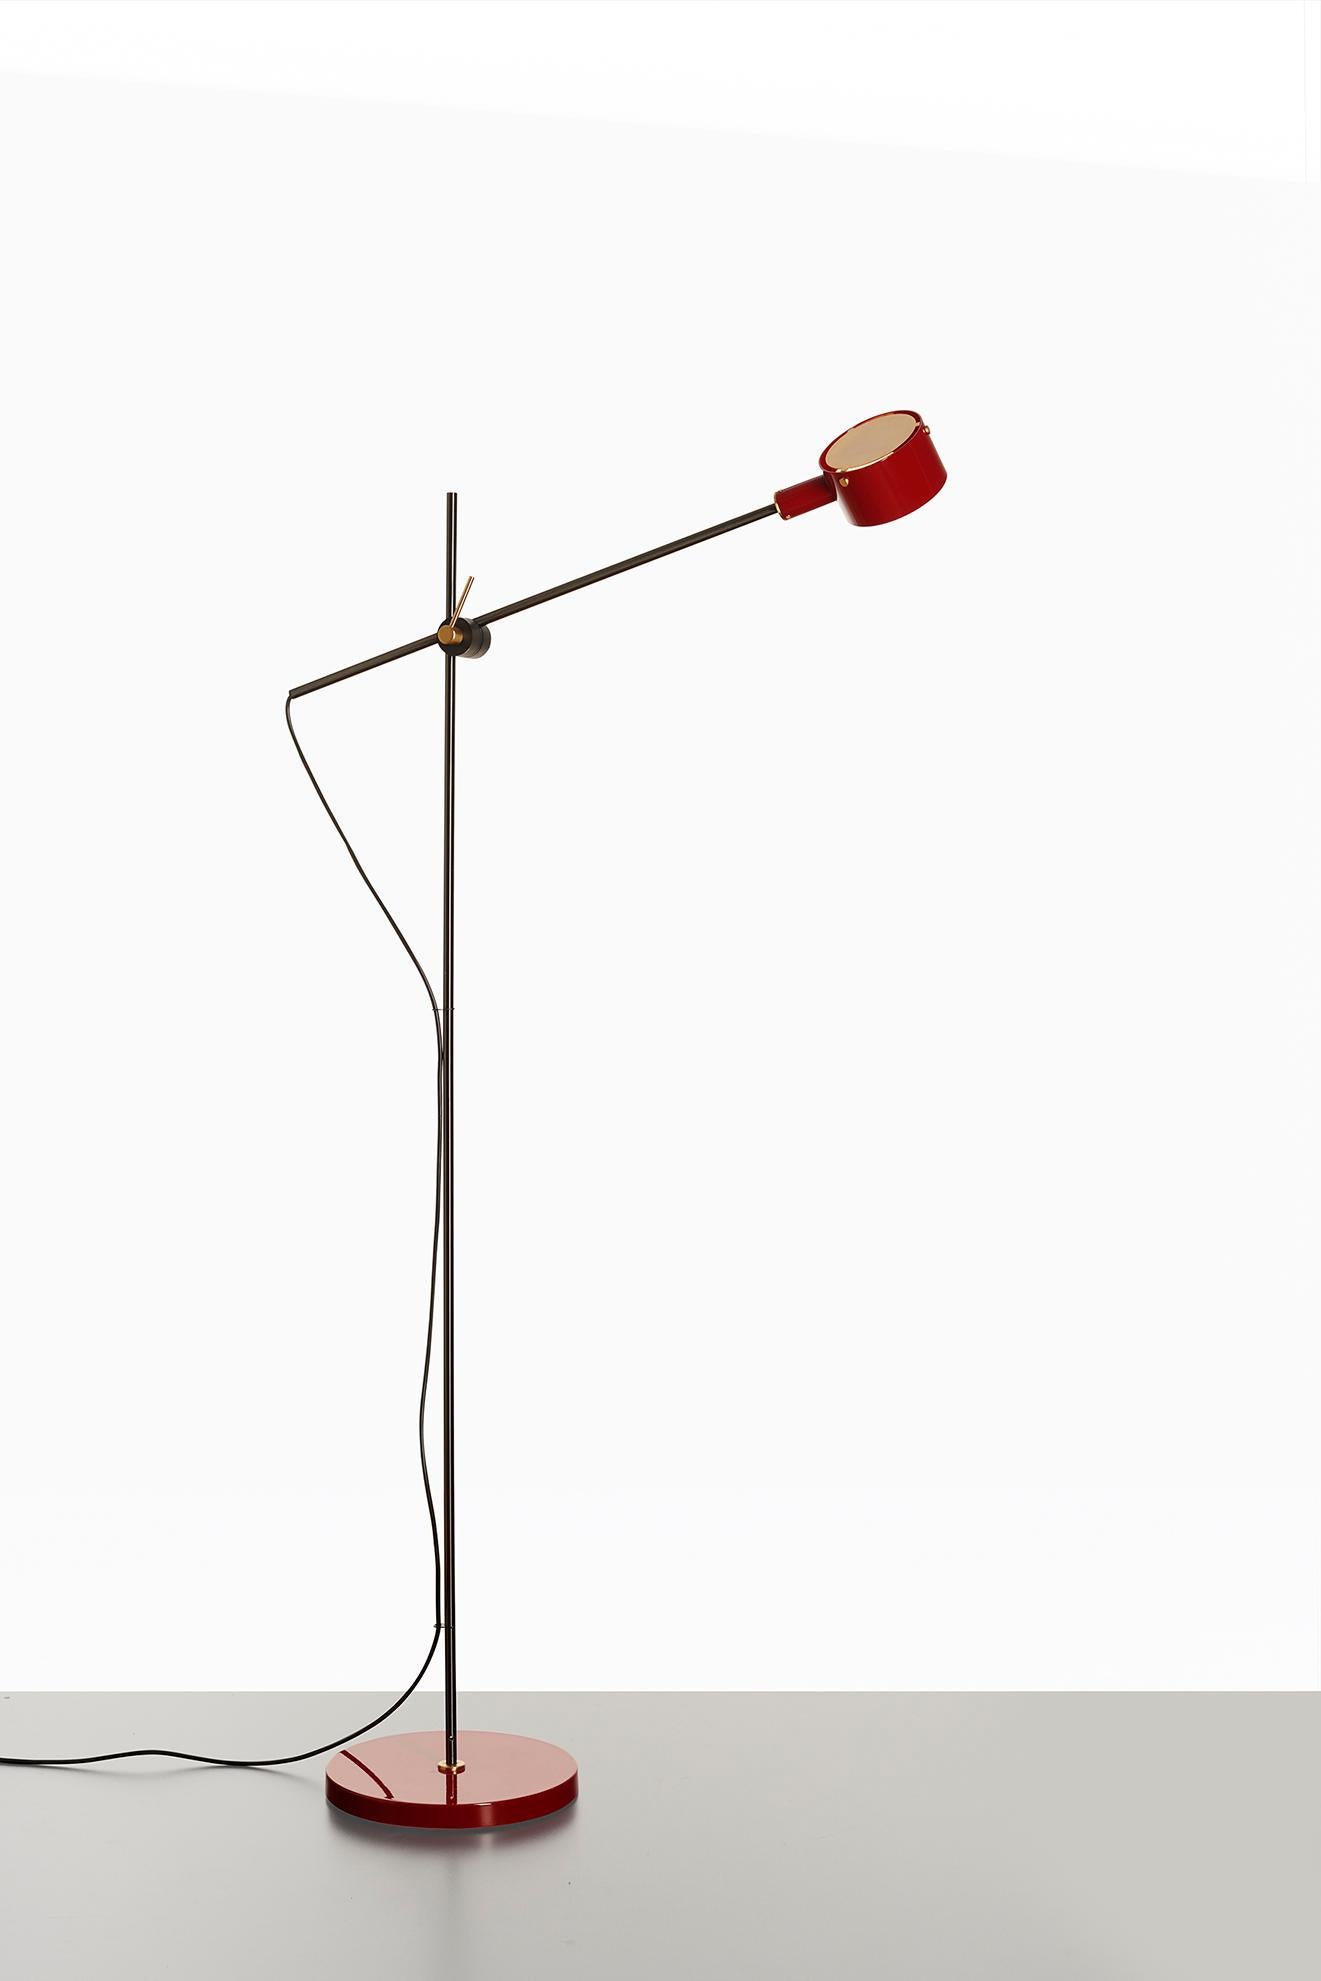 Die Leuchte G.O. ist die Neuauflage eines Modells, das Giuseppe Ostuni in den 1960er Jahren für Oluce entworfen hat.
Eine Leuchte, die im Kern ihres Designs sehr aktuell ist und sich durch einen vertikalen Schaft auszeichnet, von dem ein